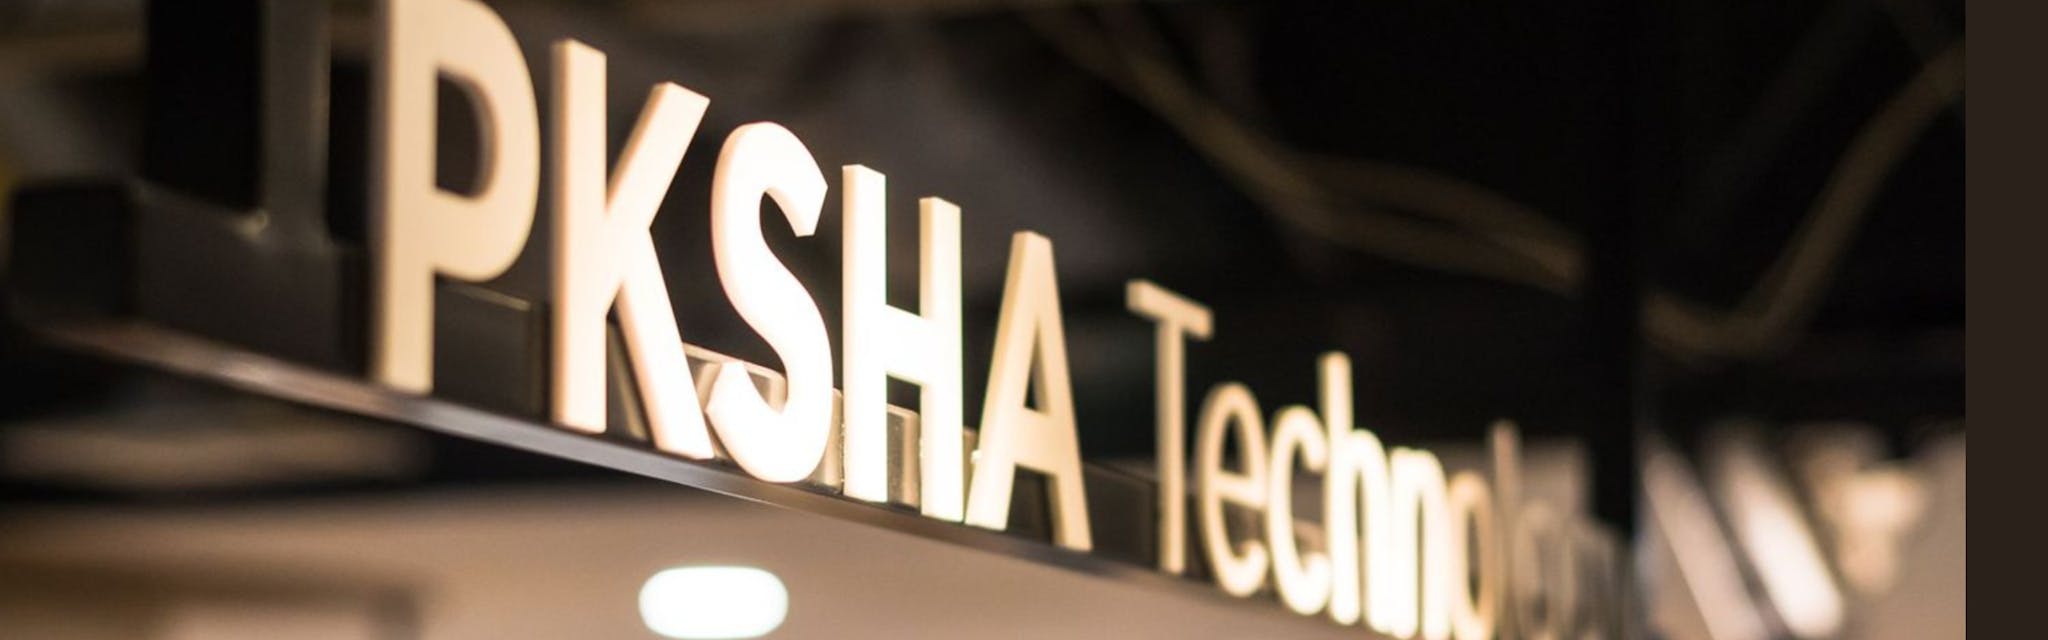 株式会社PKSHA Technology - カバー画像